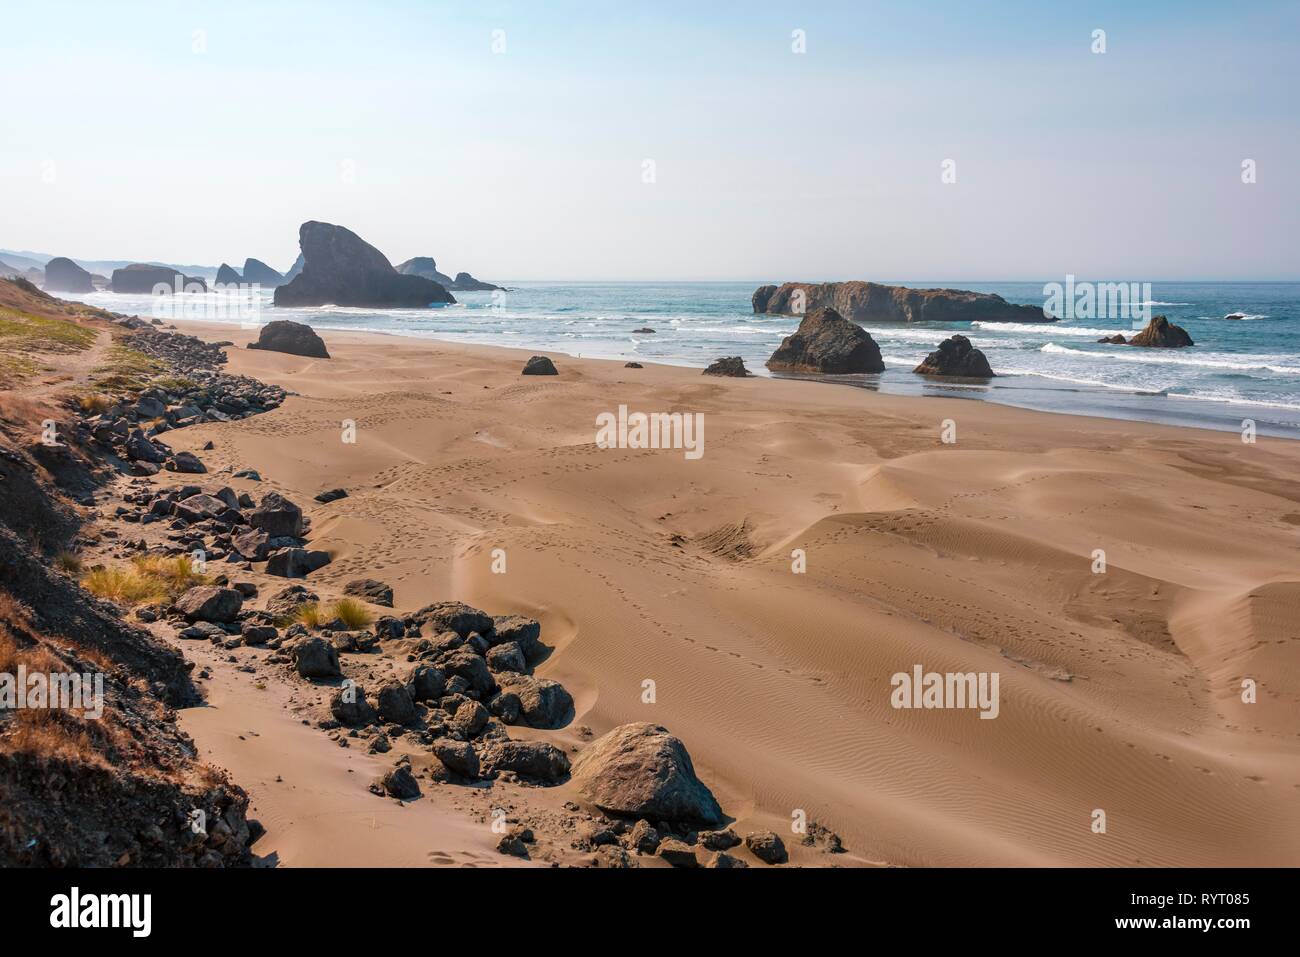 Paysage côtier, plage de sable avec des rochers escarpés, Myers Creek Beach, Oregon USA Banque D'Images